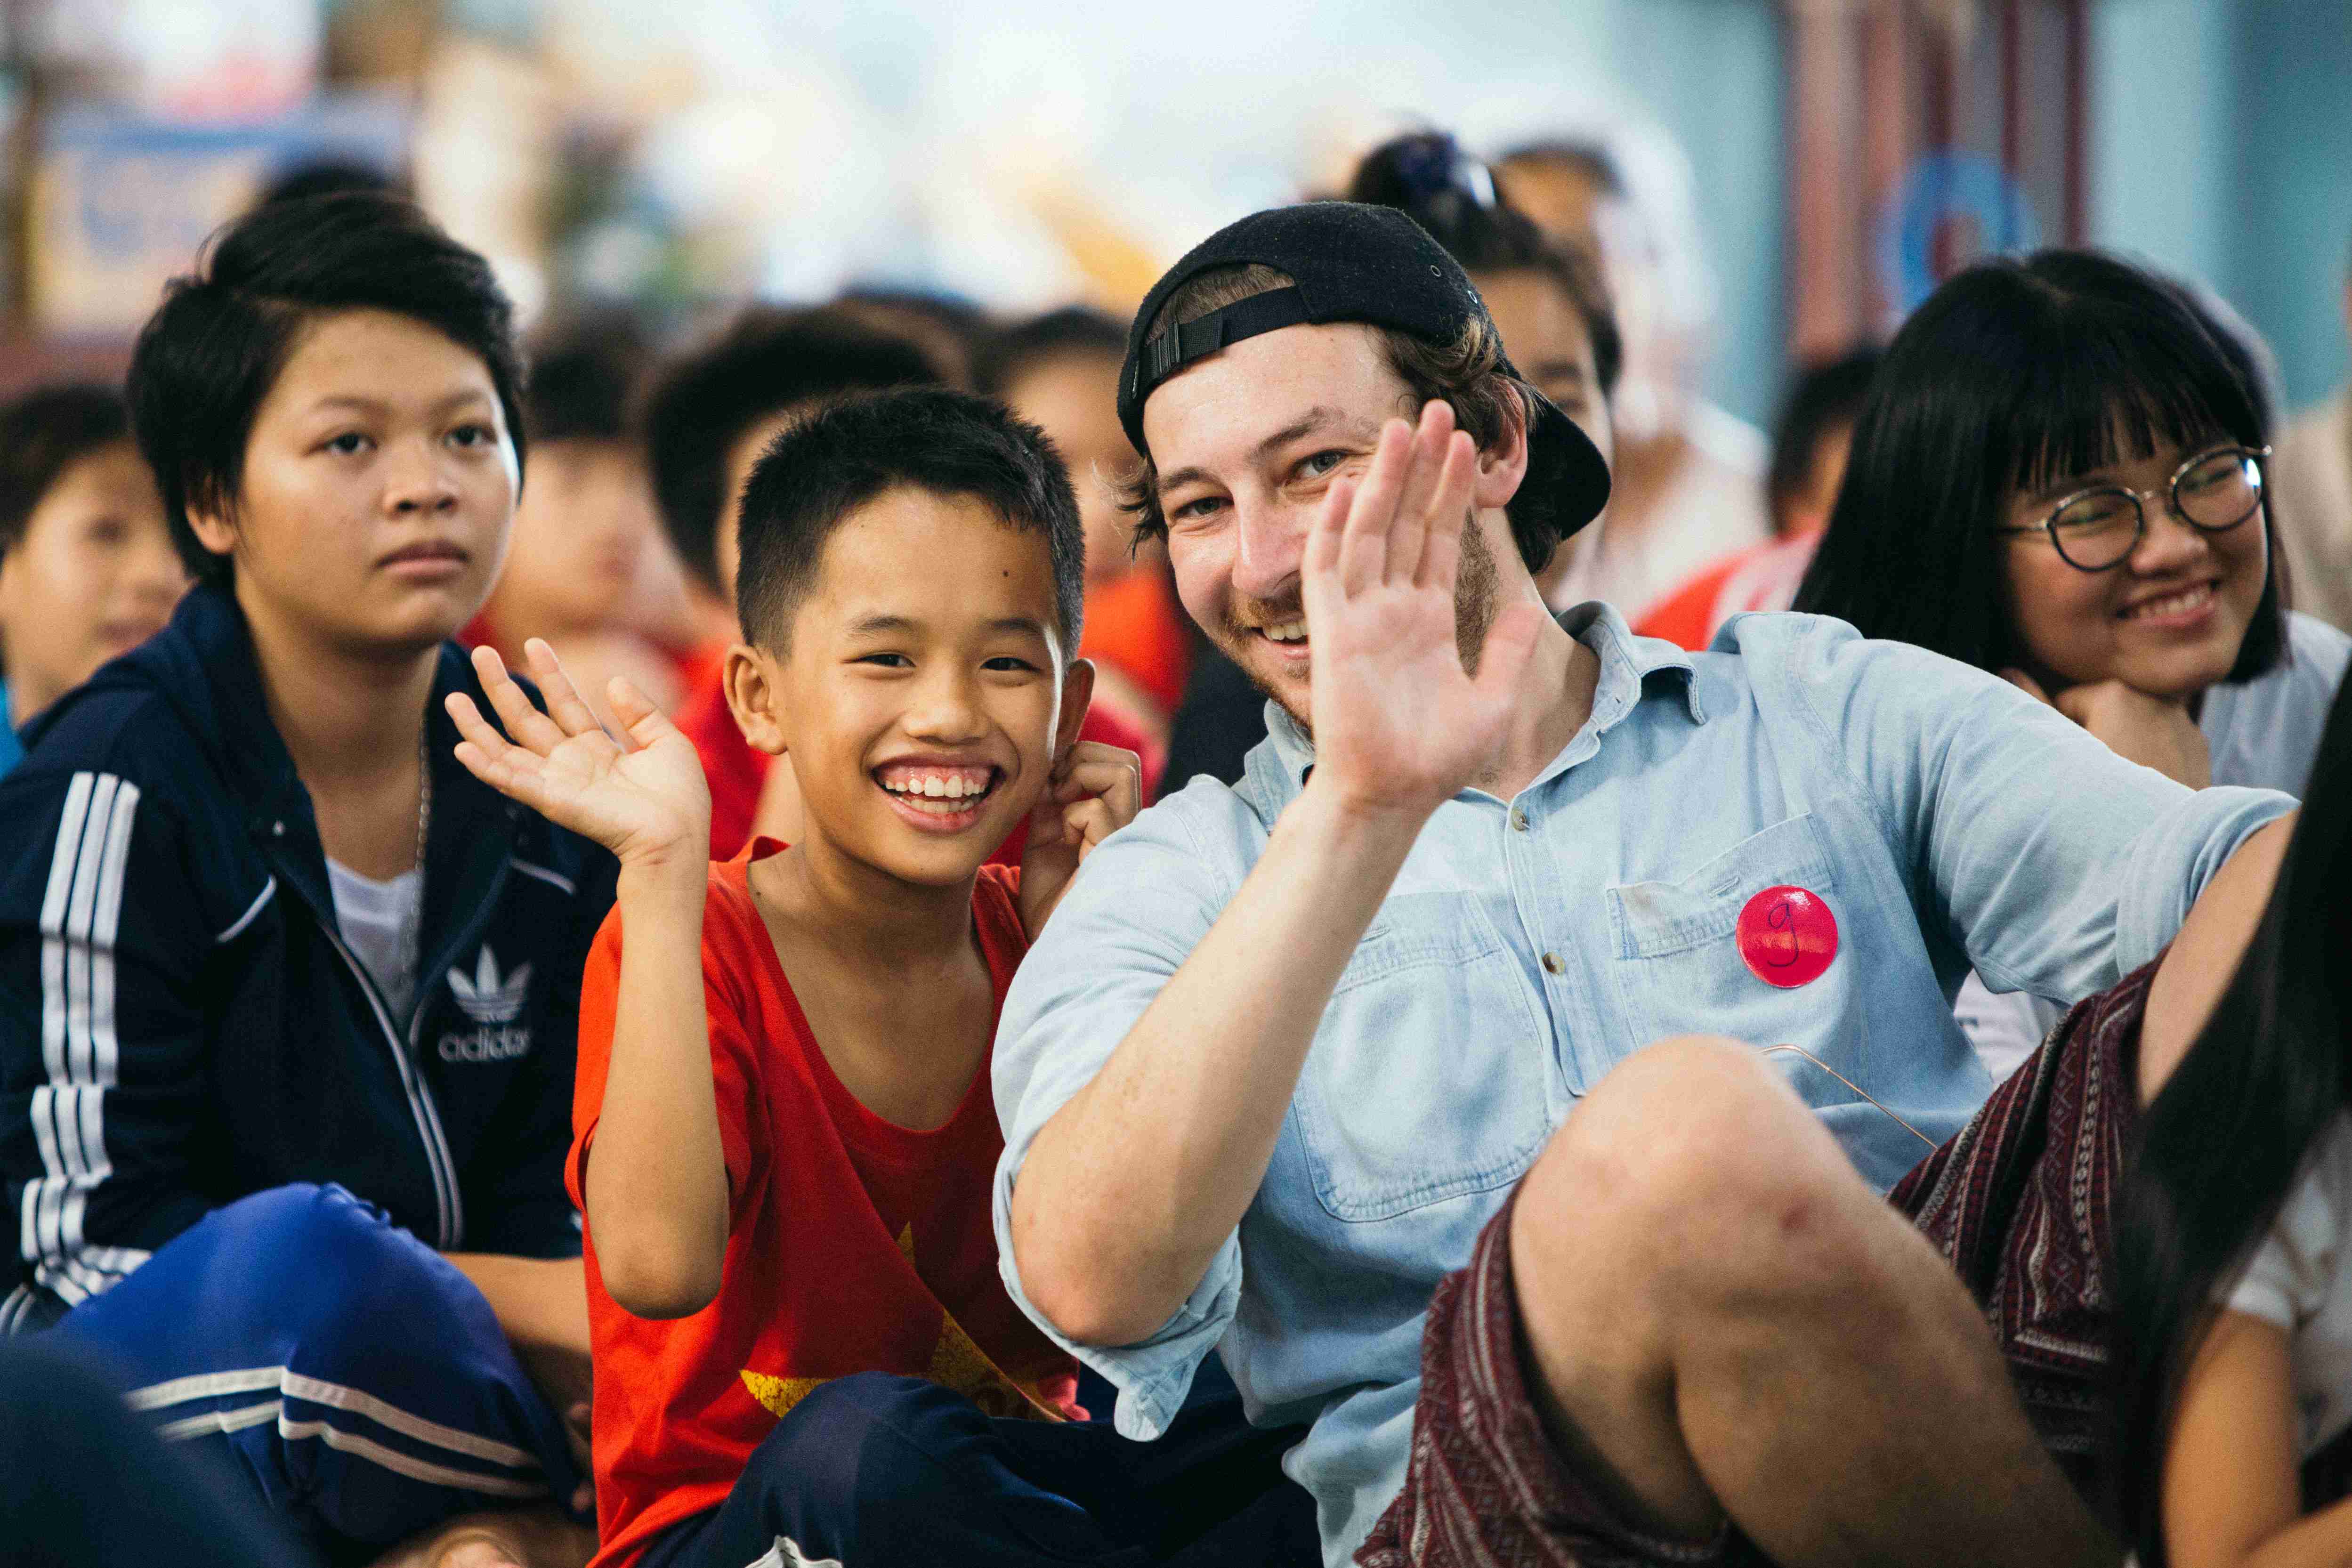 Suốt hai tuần trước Giáng sinh, sinh viên RMIT Việt Nam tại cơ sở Nam Sài Gòn đã gây quỹ cho trẻ em ở làng trẻ SOS Bến Tre bằng việc bán thiệp và những món quà tự làm đầy màu sắc. Sau đó, các bạn đã đến thăm làng SOS, tổ chức những trò chơi vui nhộn, tặng quà và mang đến niềm vui cho các em nhỏ.